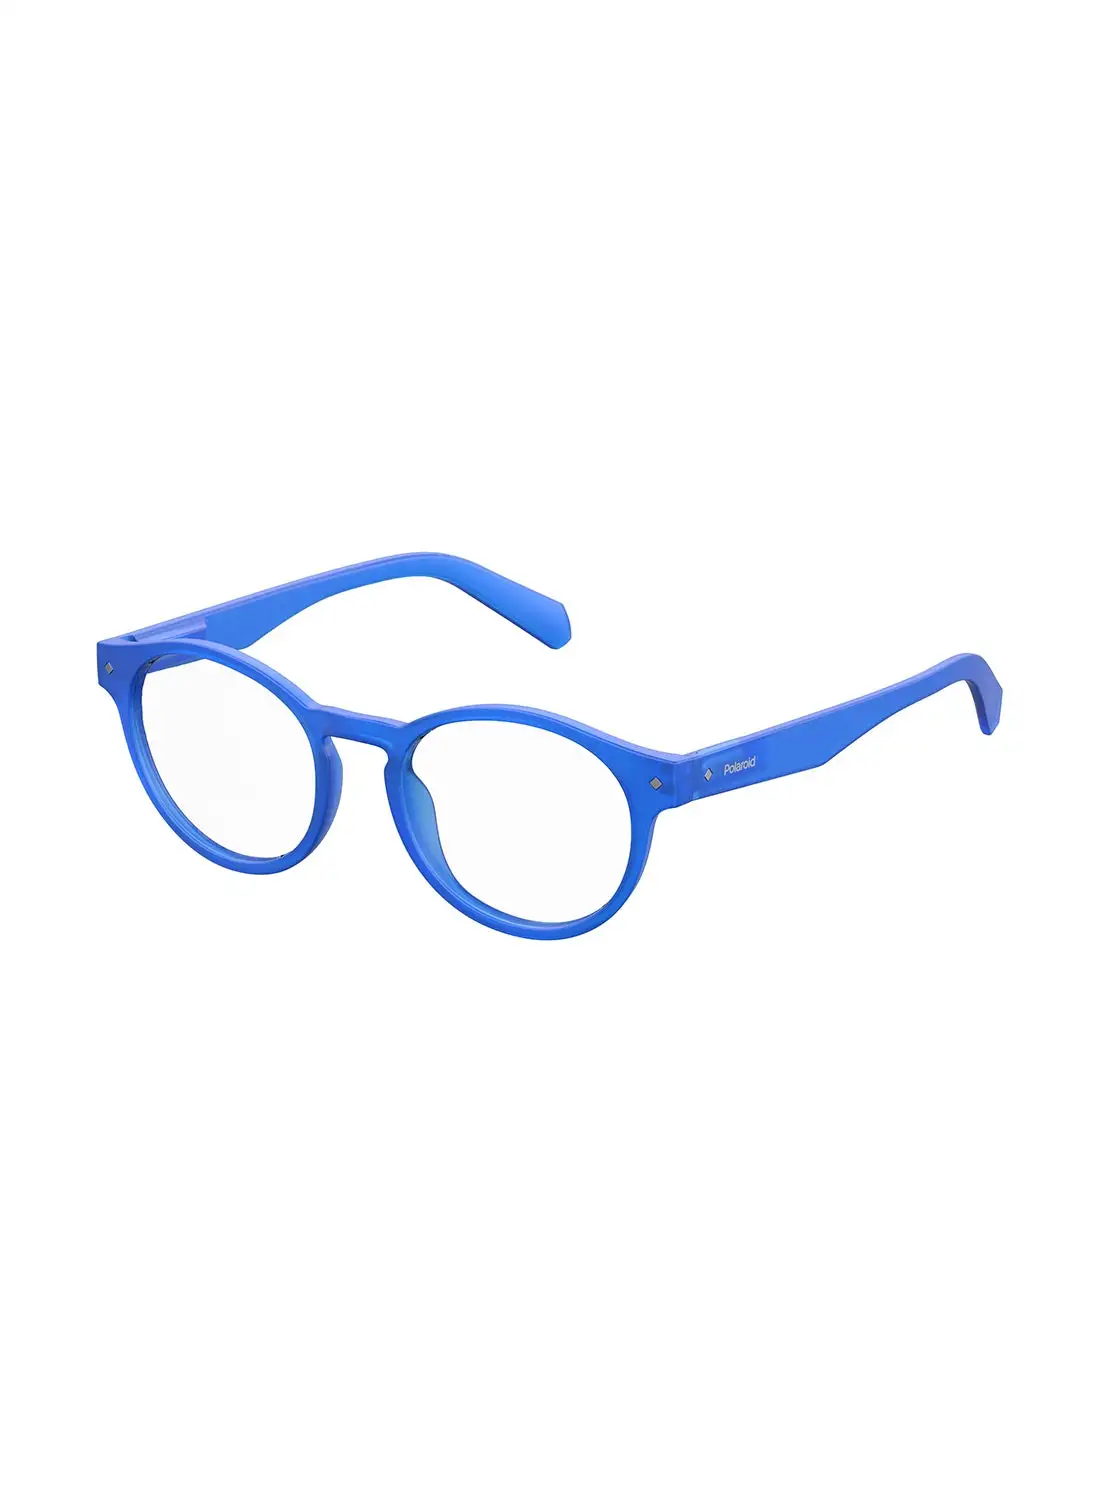 بولارويد نظارة قراءة بيضاوية للجنسين - Pld 0021/R Blue 49 - مقاس العدسة: 49 ملم